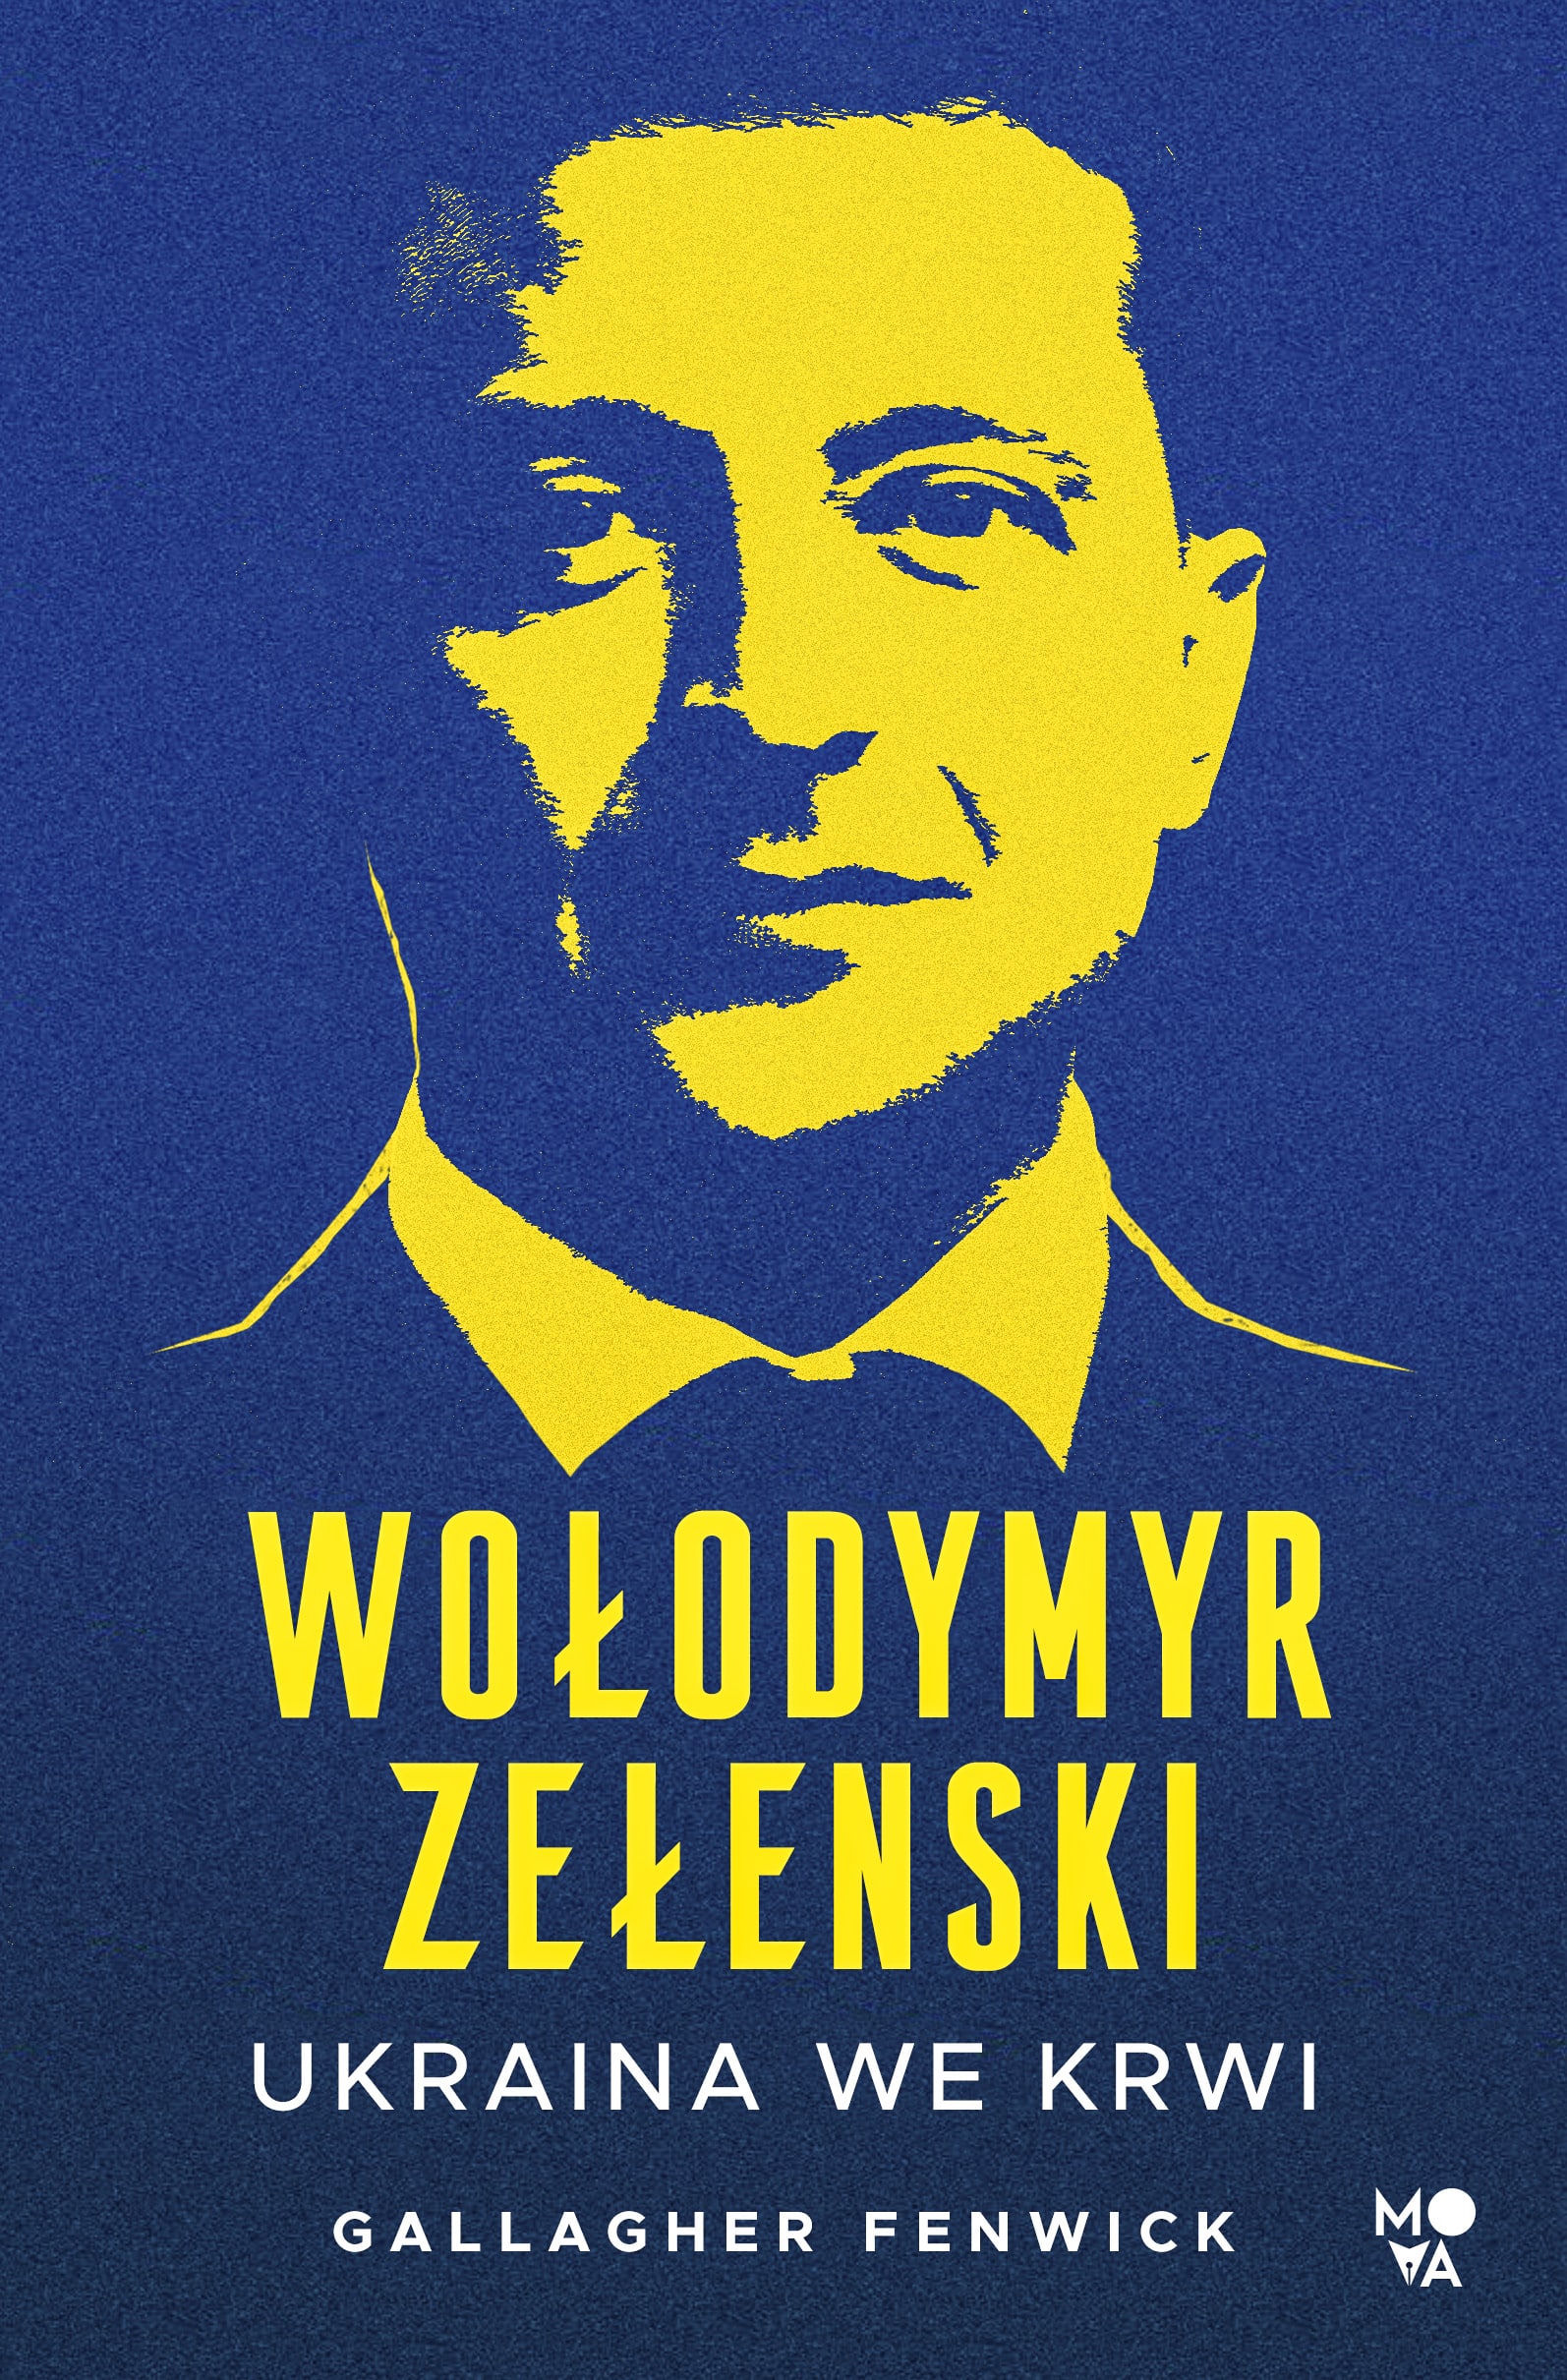 okładka książki Wołodymyr Zełenski. Ukraina we krwi